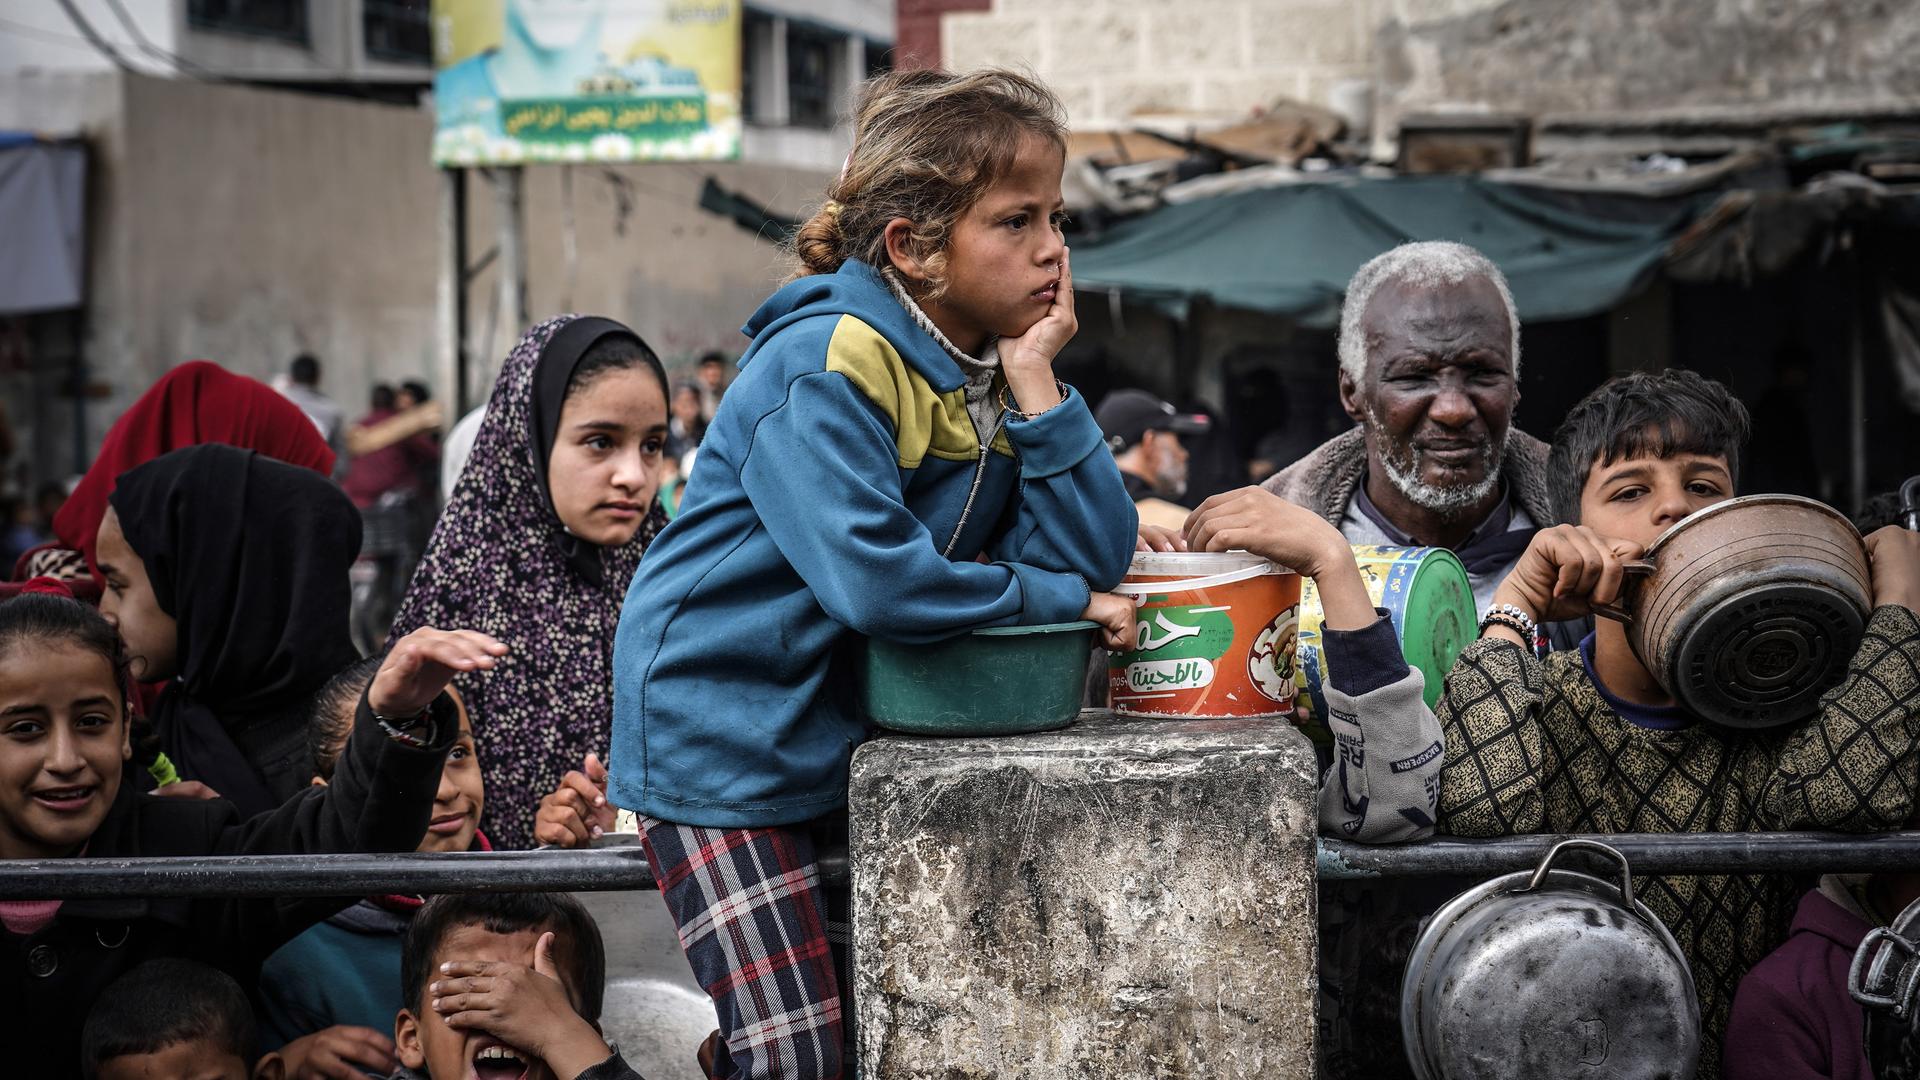 Palästinensische Kinder warten mit Erwachsenen in einer Schlange, um von Freiwilligen zubereitetes Essen zu erhalten